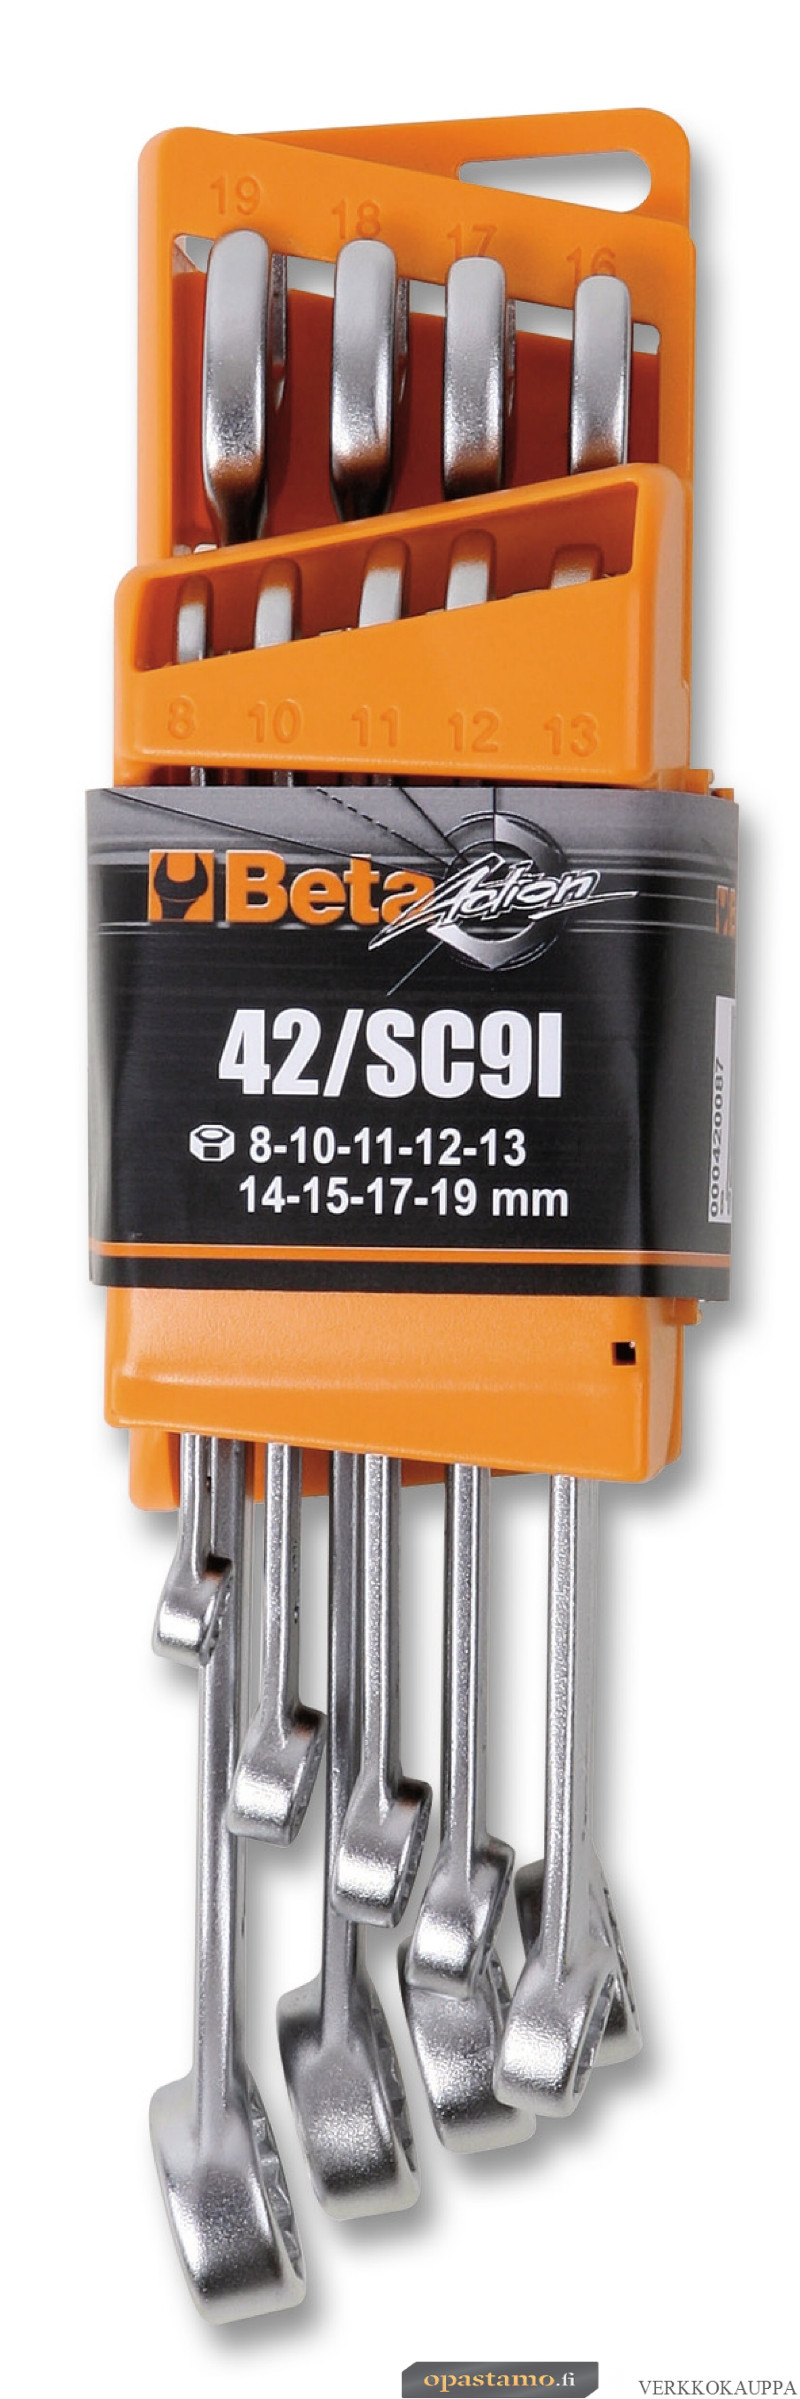 BETA 42/SCV9I tyhjä displei tuotteille 42/SC9I